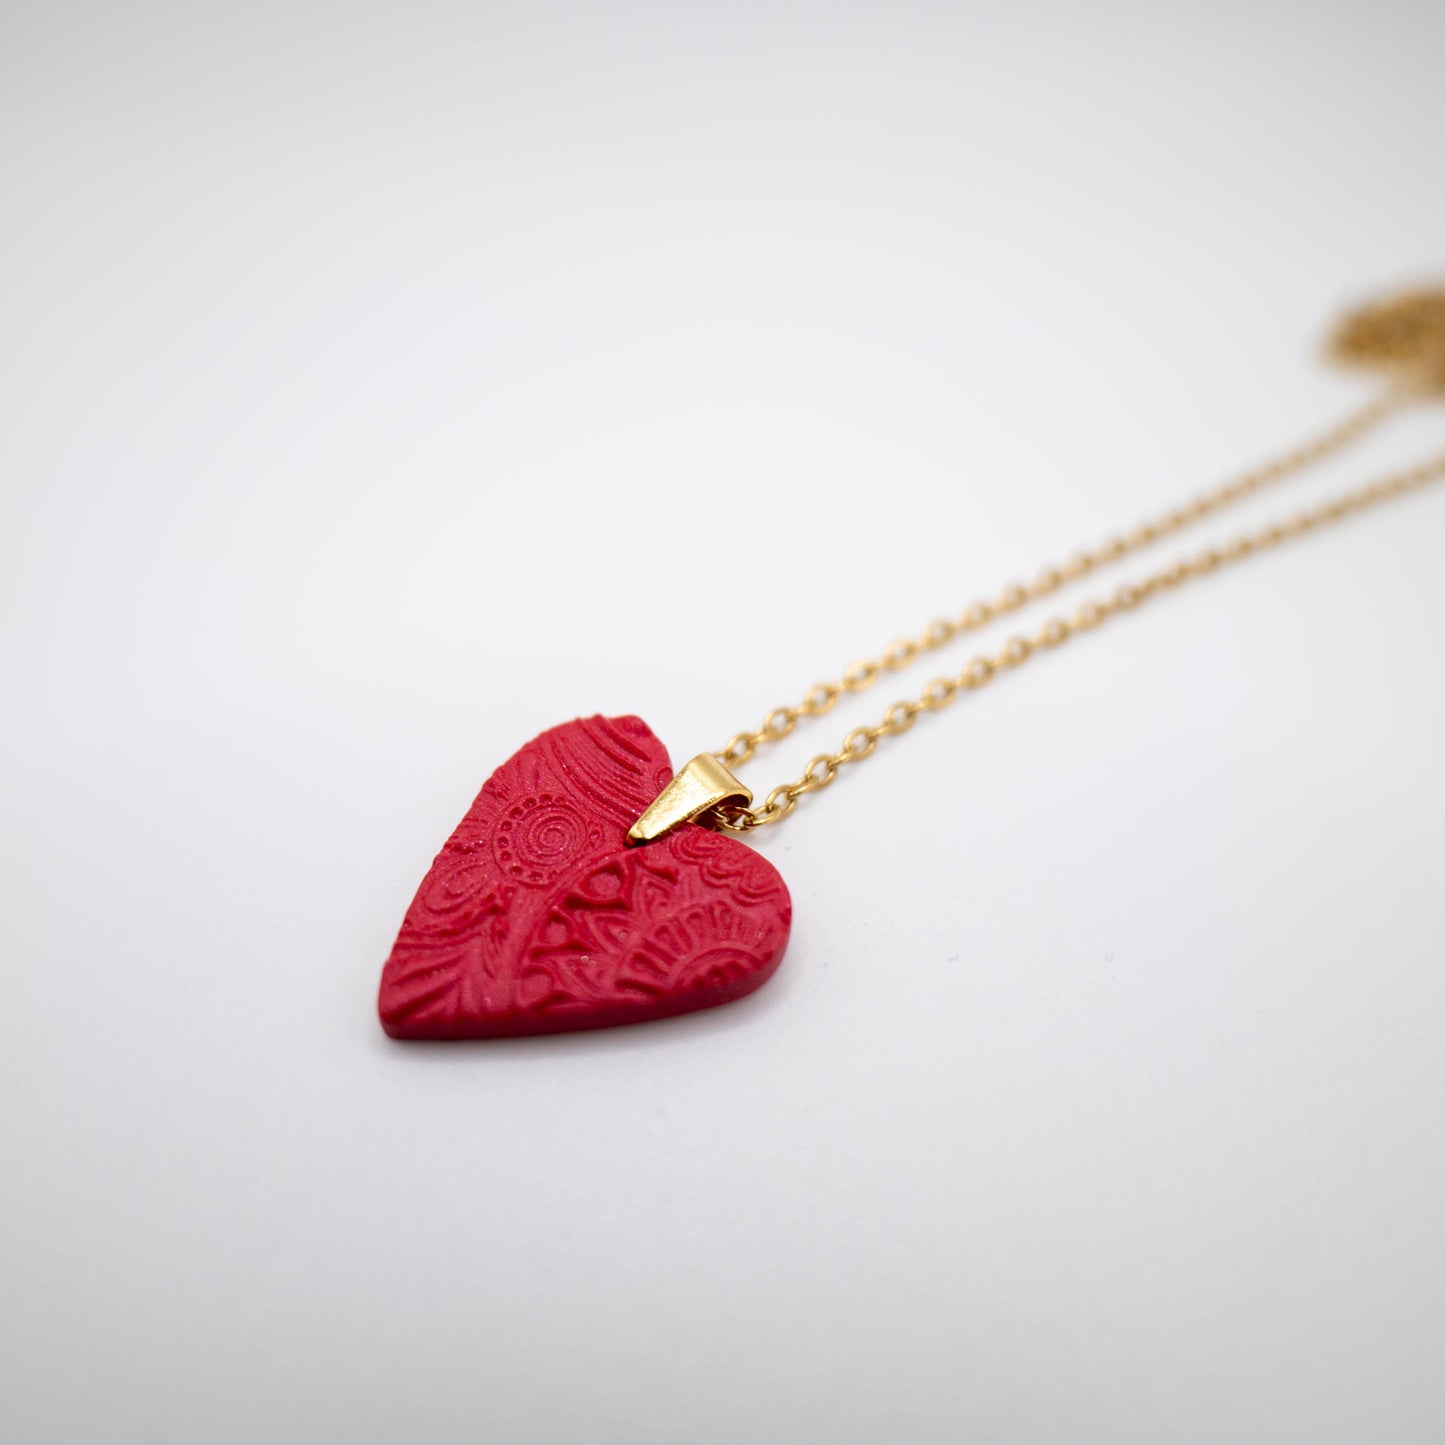 Be my valentine - collier en forme de cœur rouge